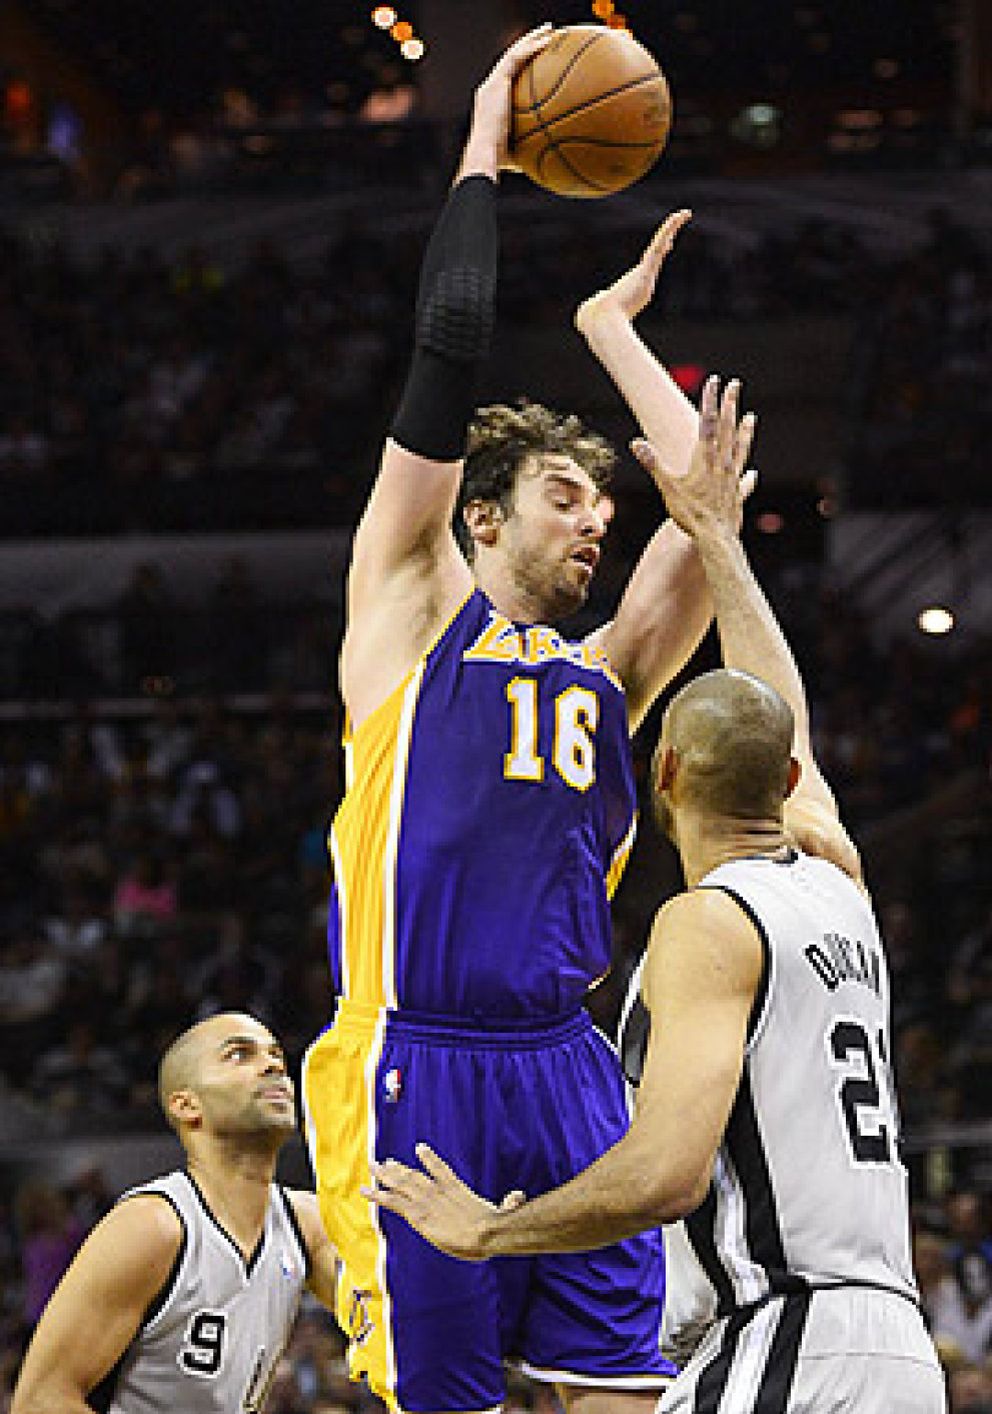 Foto: Ginóbili da una lección de baloncesto y lleva al triunfo a los Spurs ante los Lakers